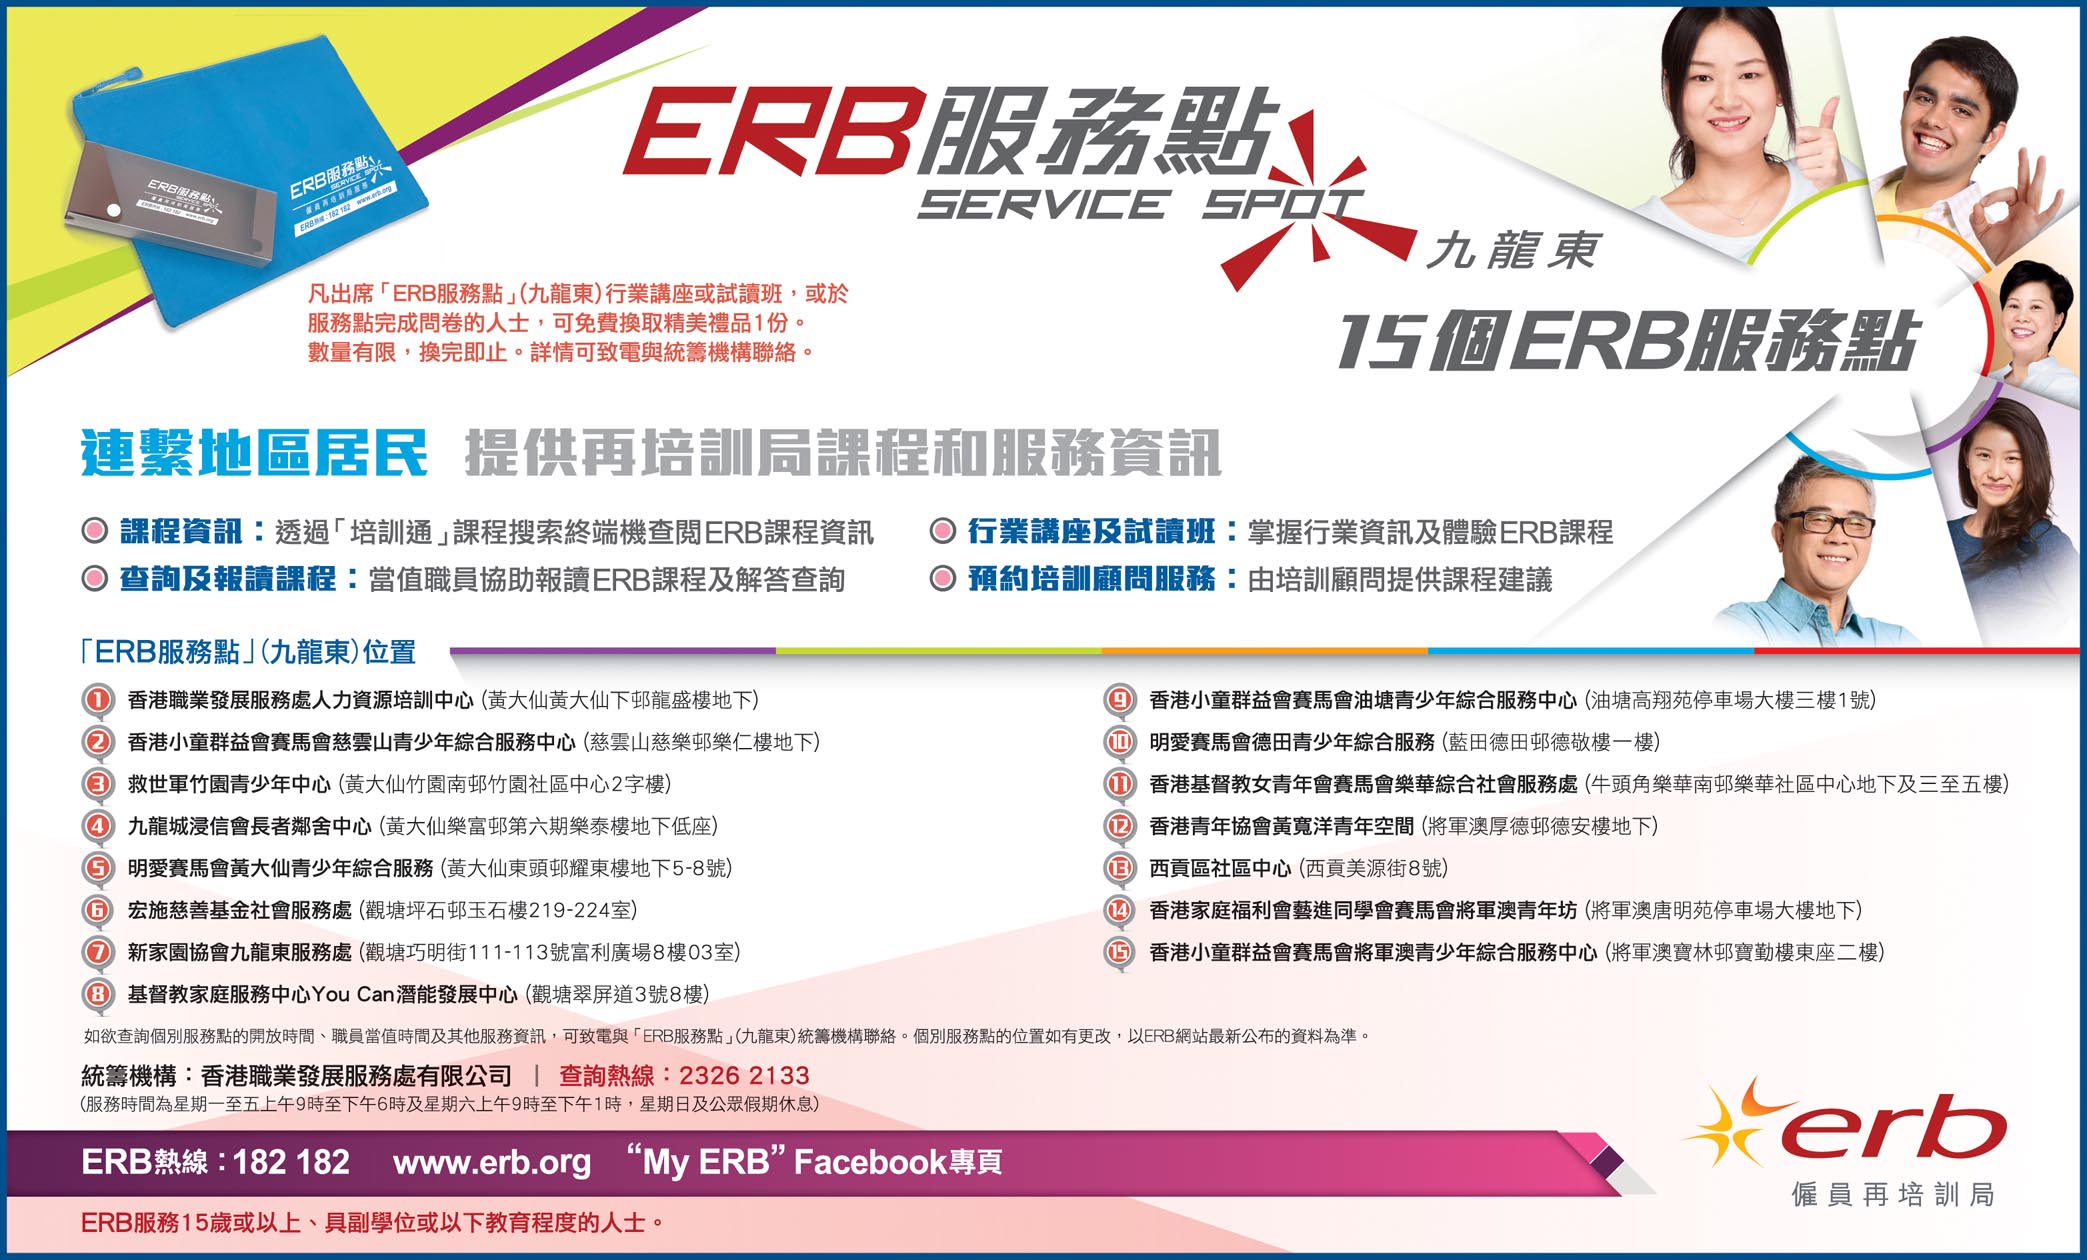 按此下載「ERB服務點」(九龍東) 報章廣告圖像版